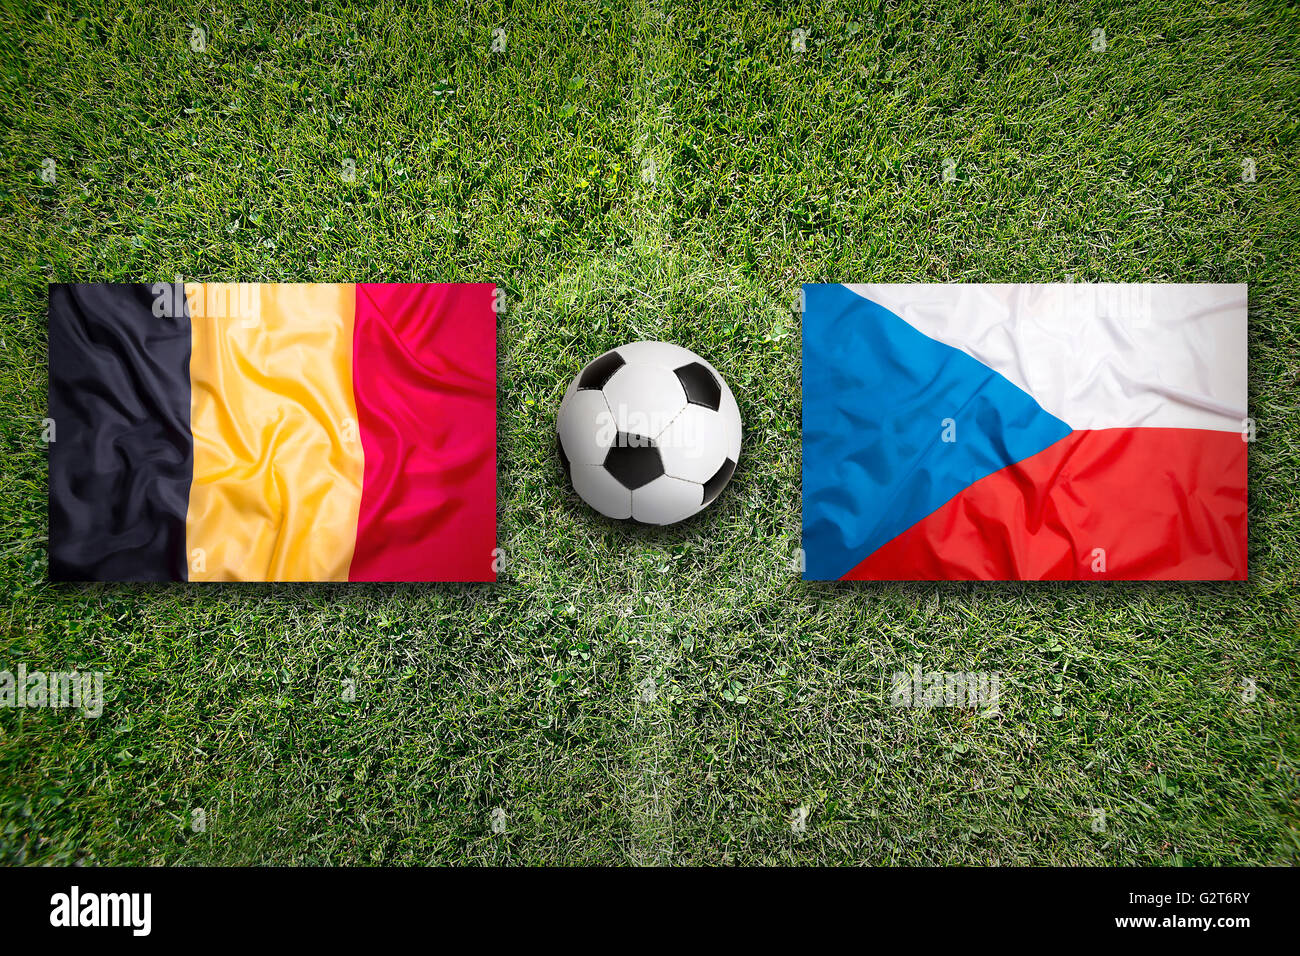 Belgium vs. Czech Republic flags on a green soccer field Stock Photo